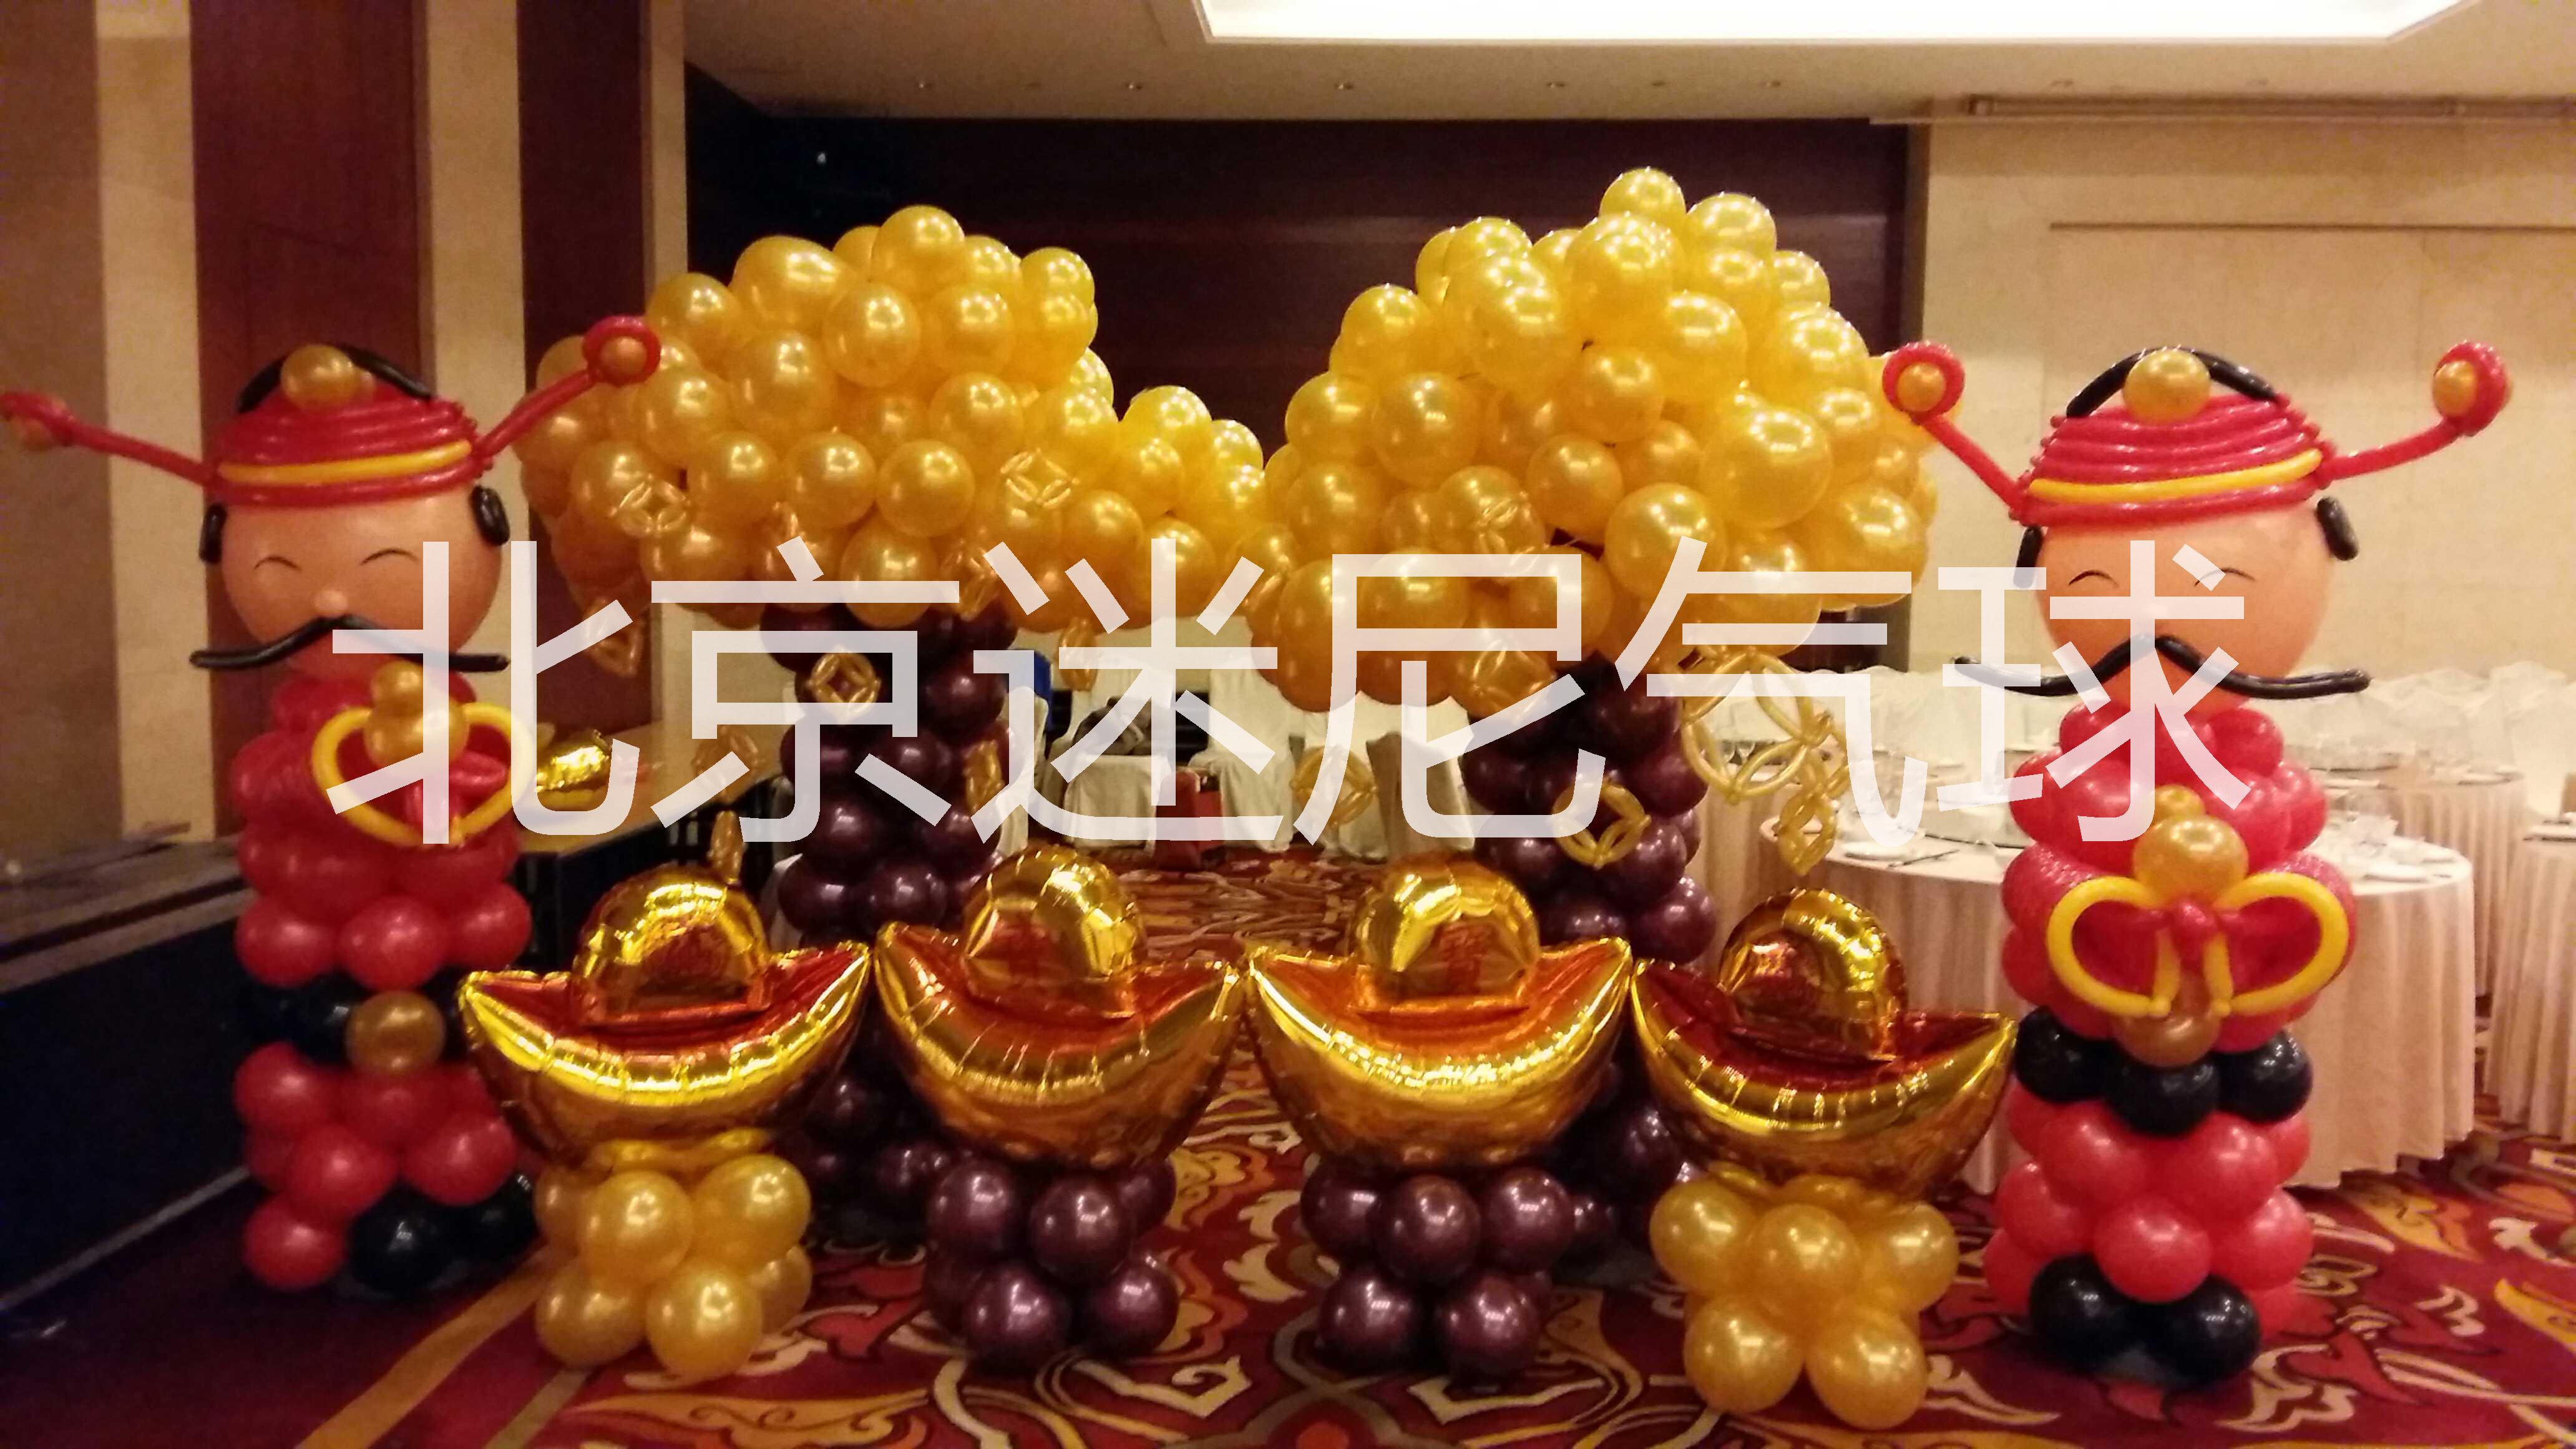 北京专业气球装饰布置 北京宝宝满月百天气球装饰布置 运动会气球装饰 生日派对气球装饰 儿童派对气球装饰布置